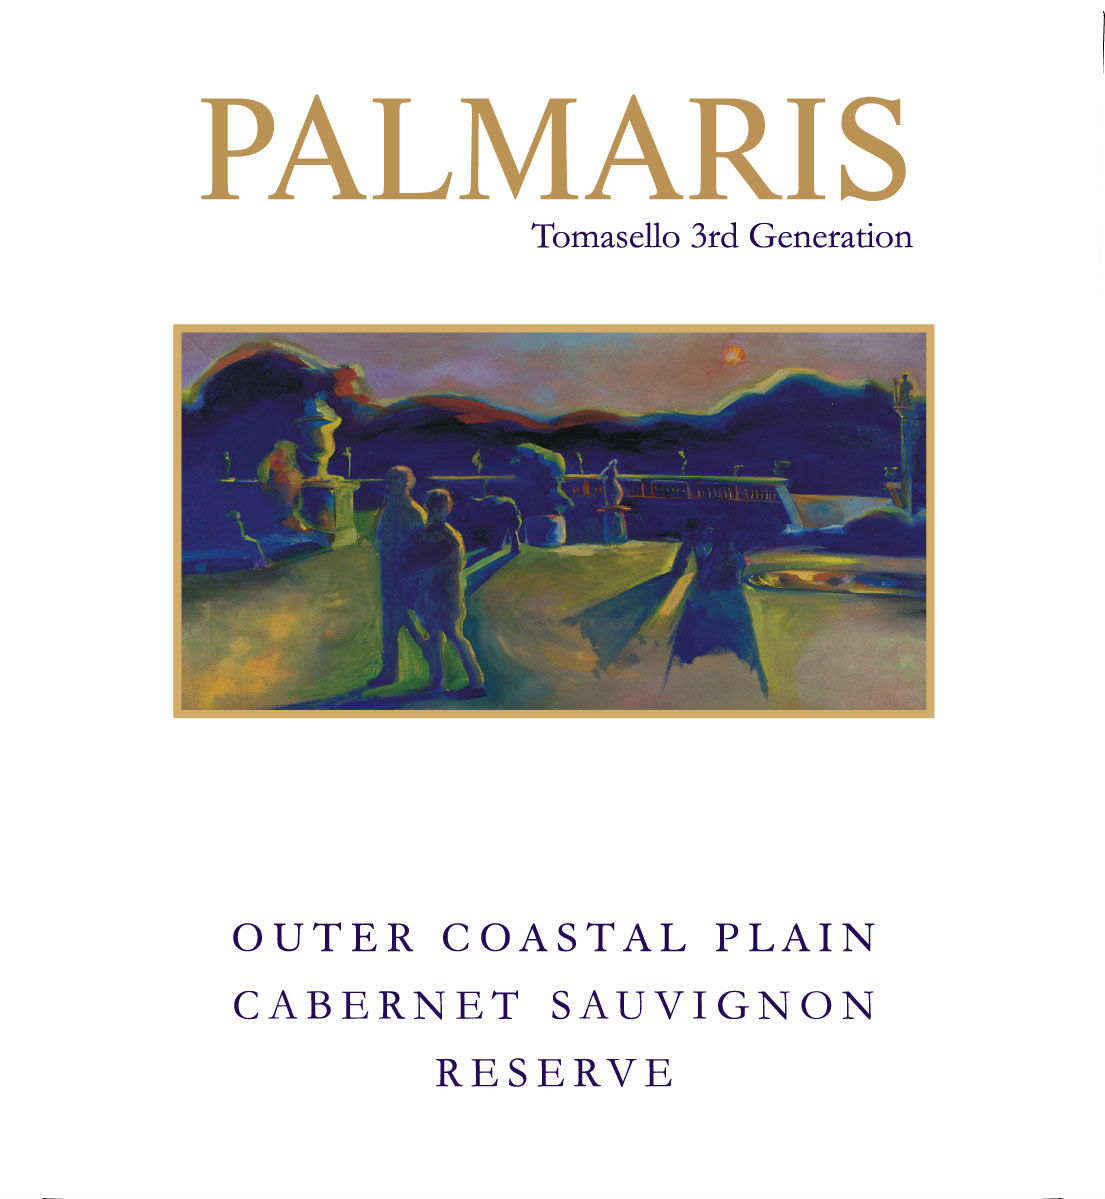 Product Image for Palmaris 2010 Outer Coastal Plain Cabernet Sauvig Res Magnum